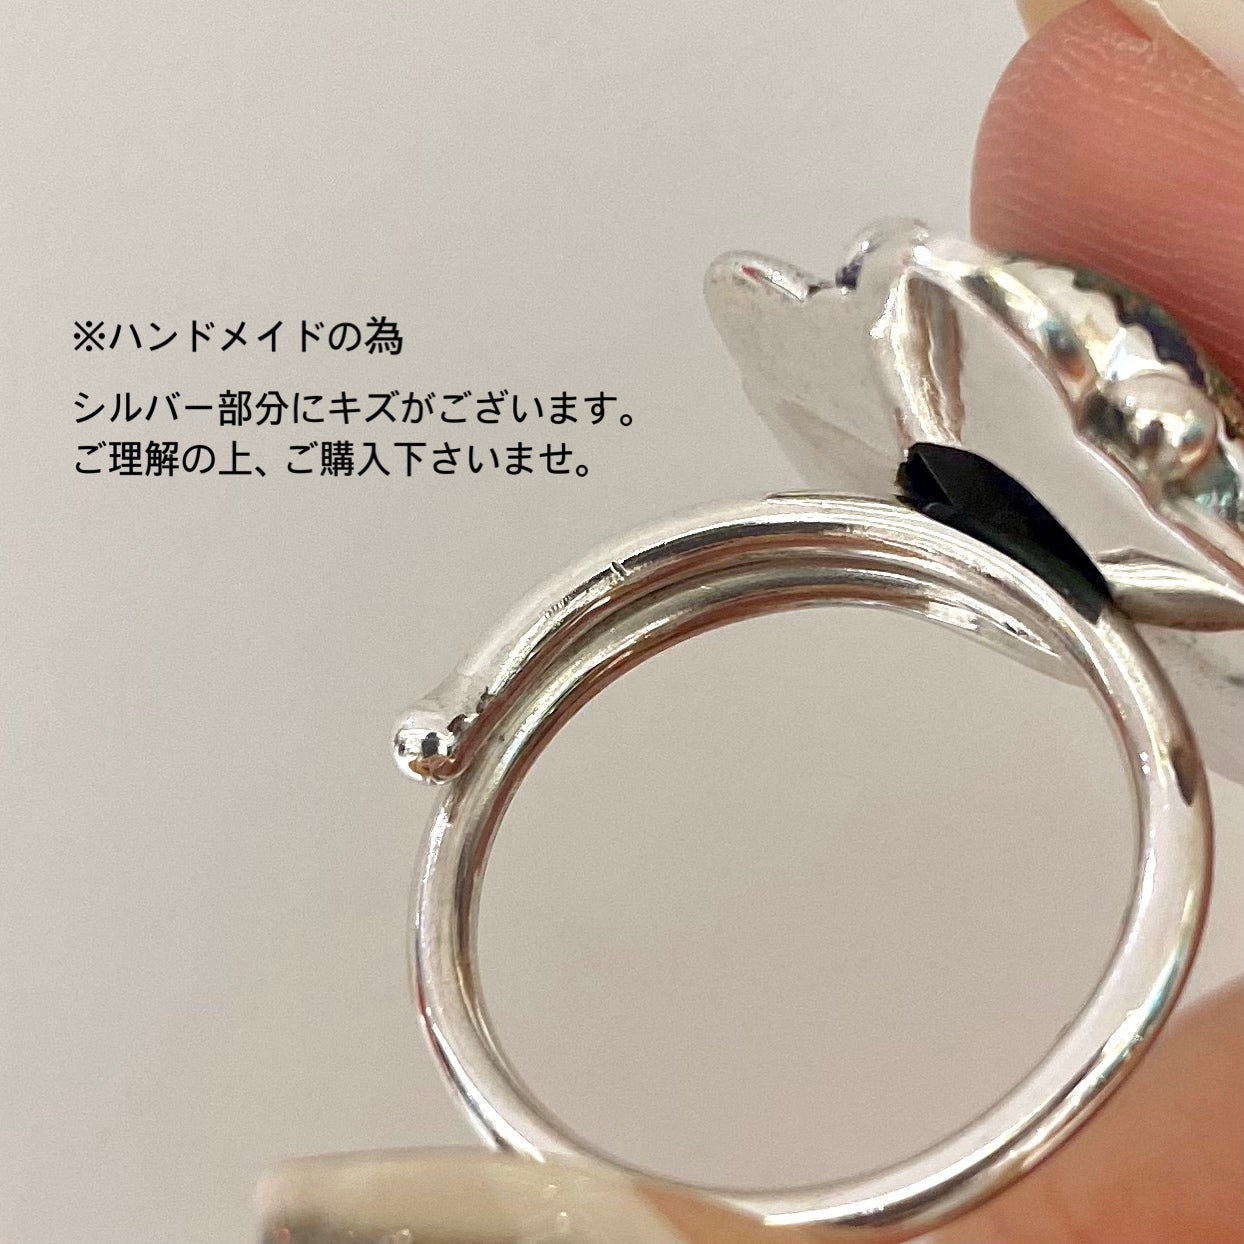 Heart design ring 6